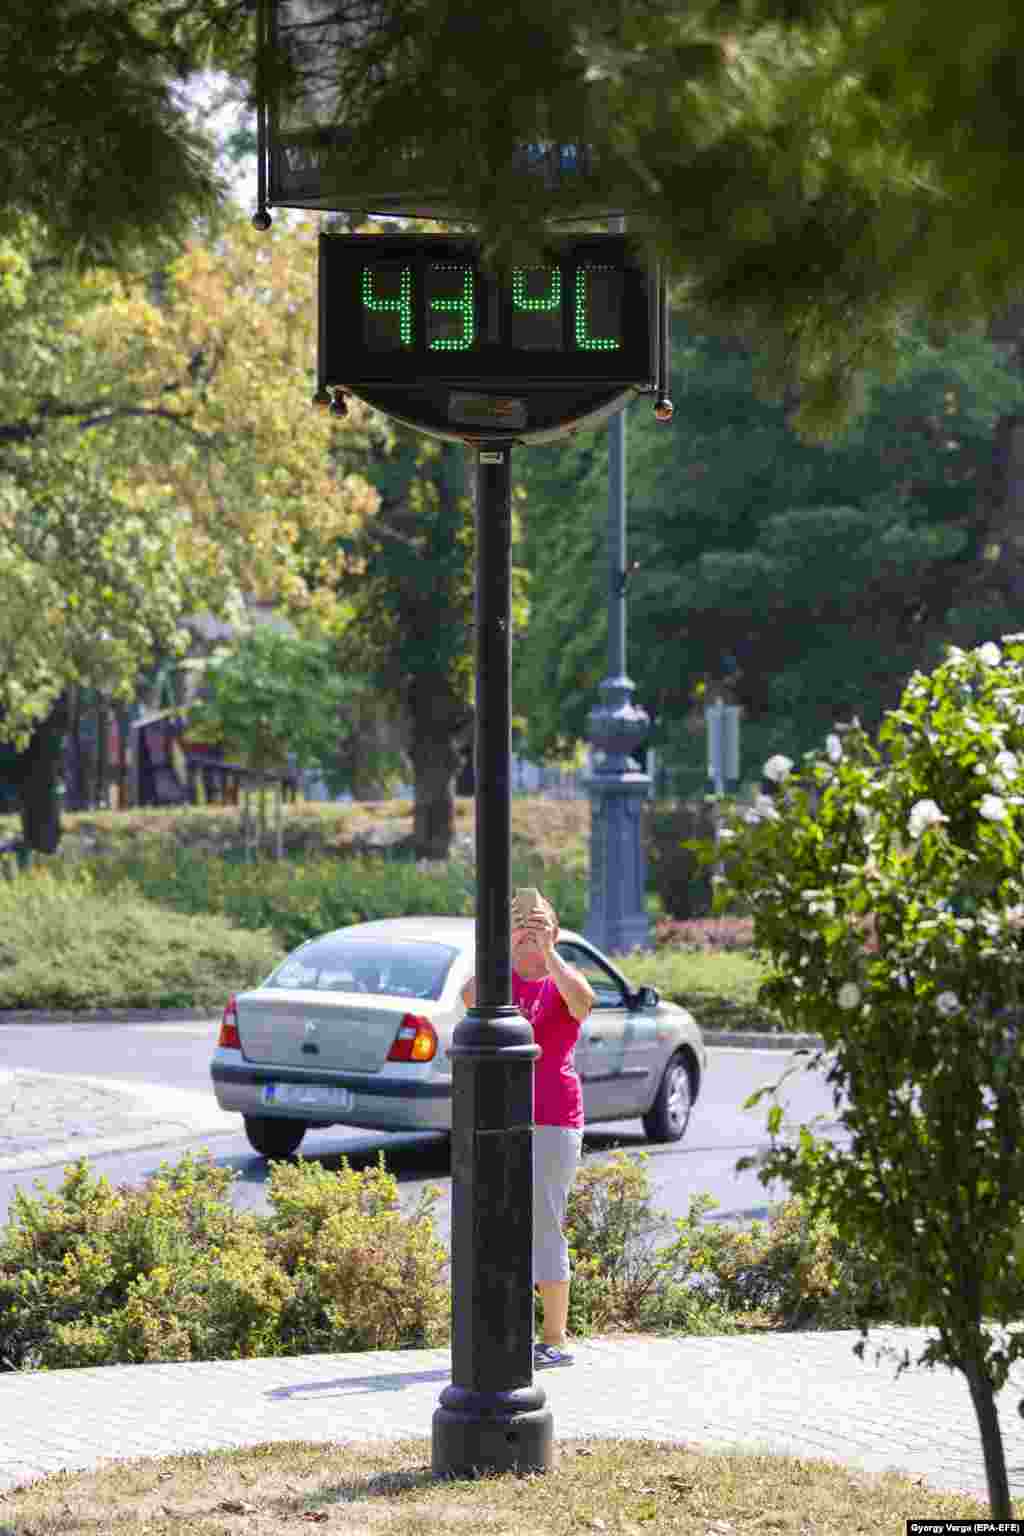 Një termometër rrugor duke shfaqur temperaturën prej 43 gradë celsius në Nagikanisha, Hungari, më 23 korrik. Bujqit nëpër Evropën Qendrore kanë raportuar dëme prej thatësirës ndaj rreth 550,000 hektarëve tokë, ka njoftuar Ministria hungareze e Bujqësisë këtë muaj.